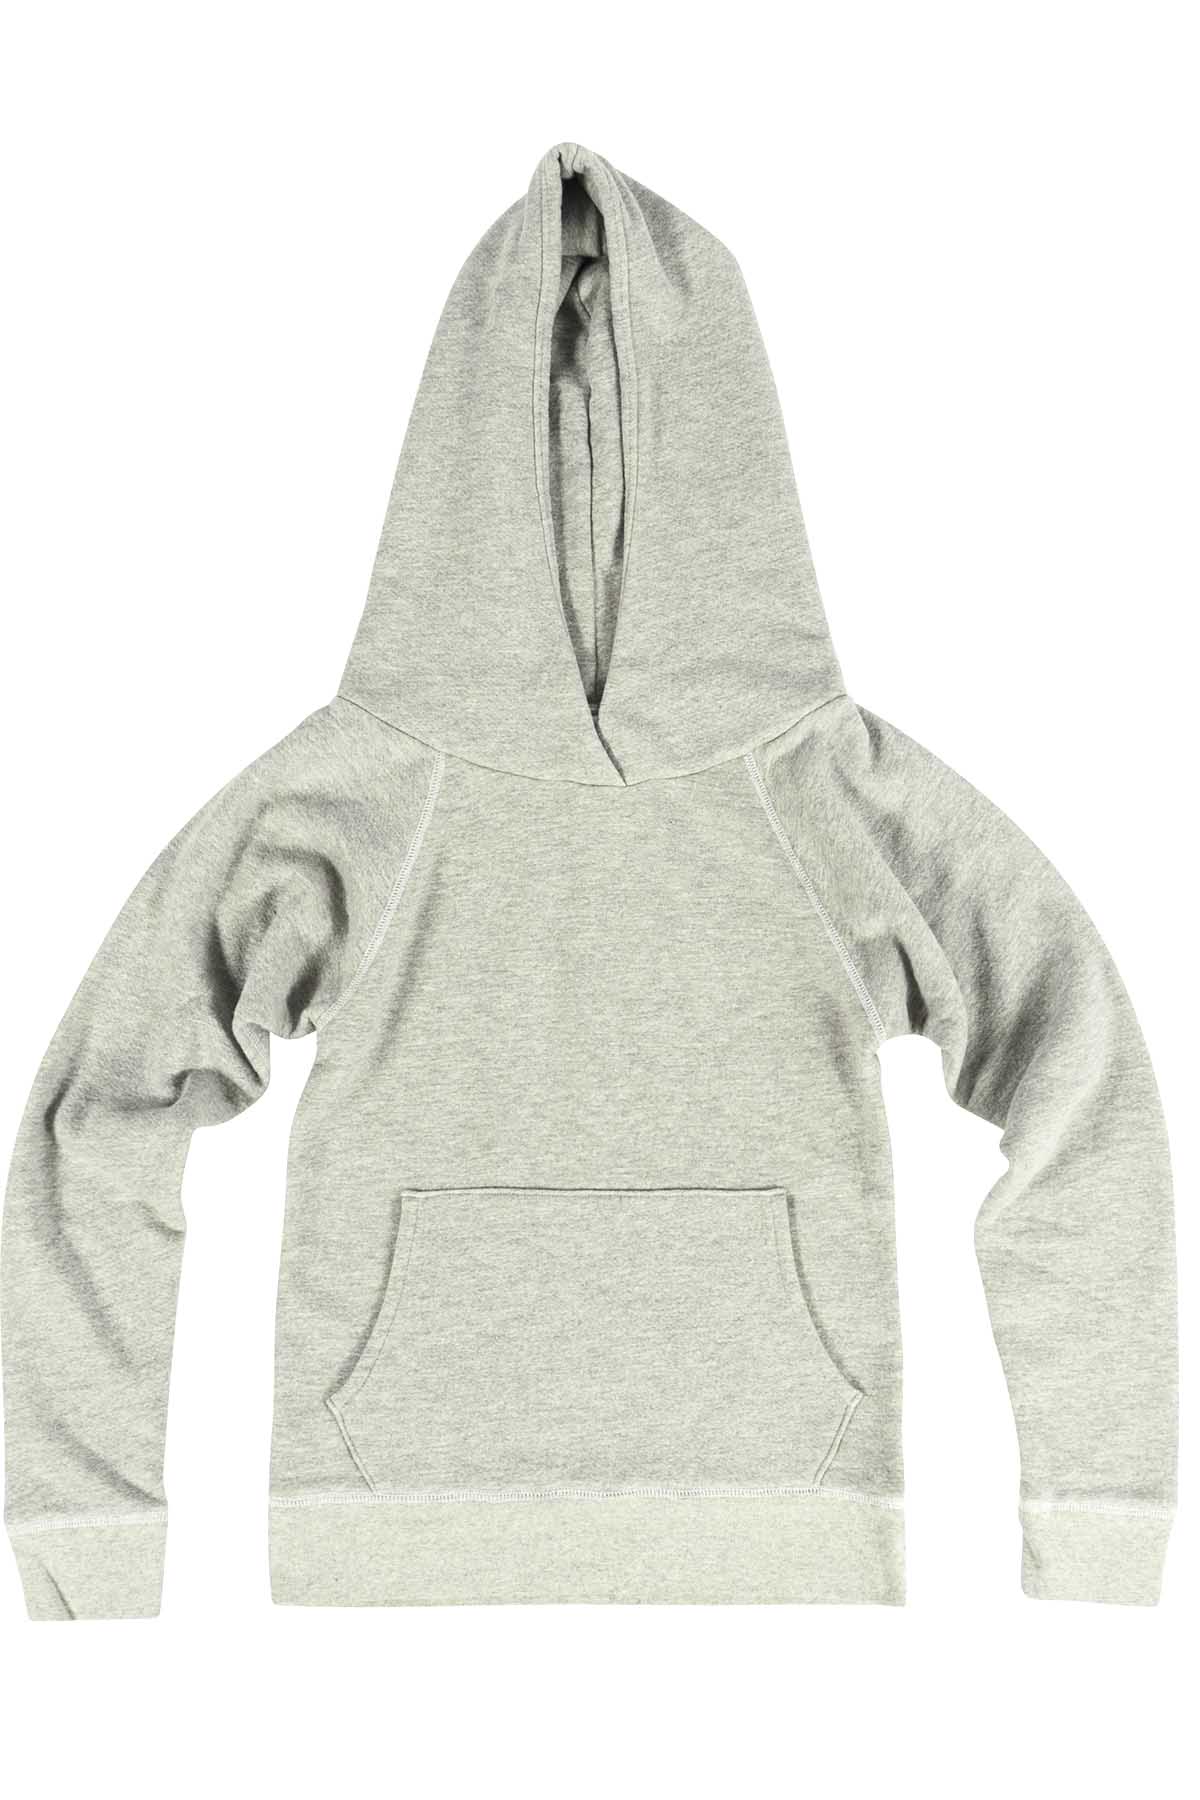 Rxmance Heather Grey Hooded Sweatshirt